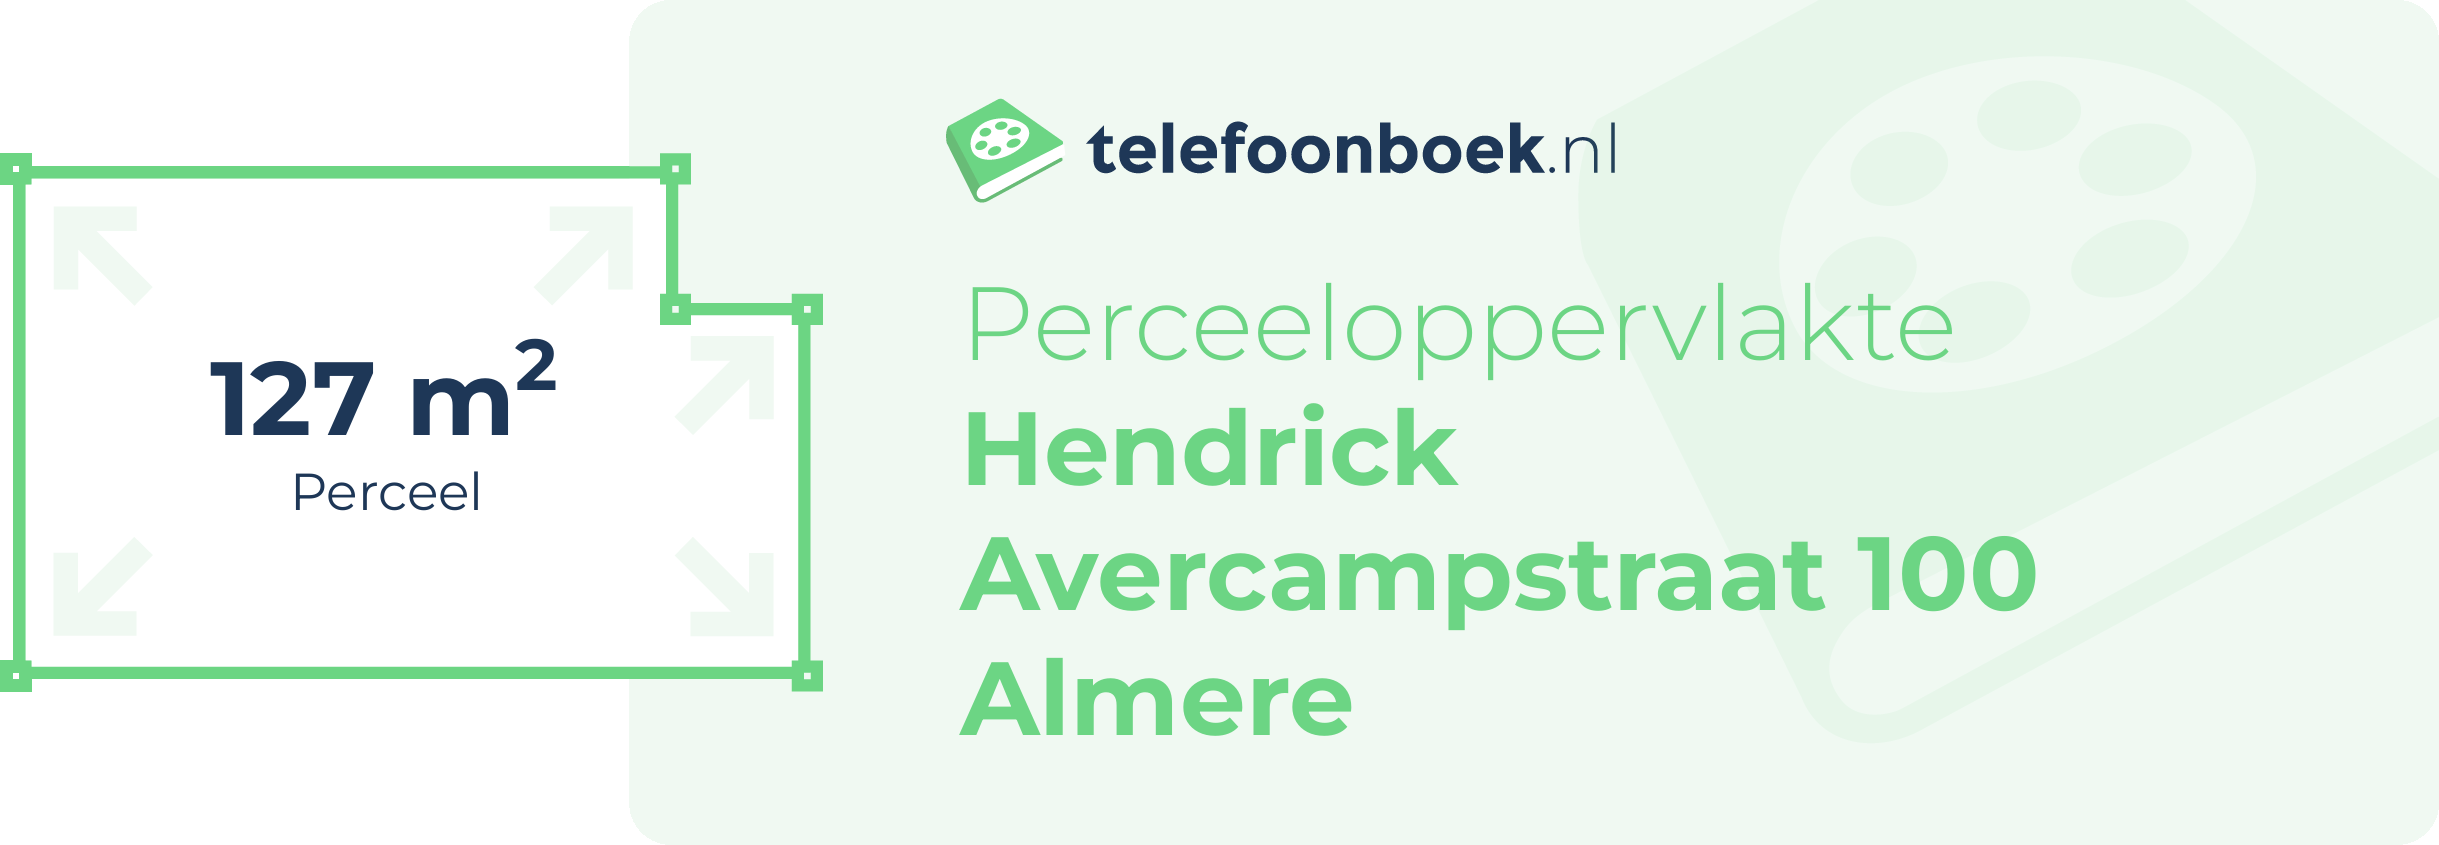 Perceeloppervlakte Hendrick Avercampstraat 100 Almere